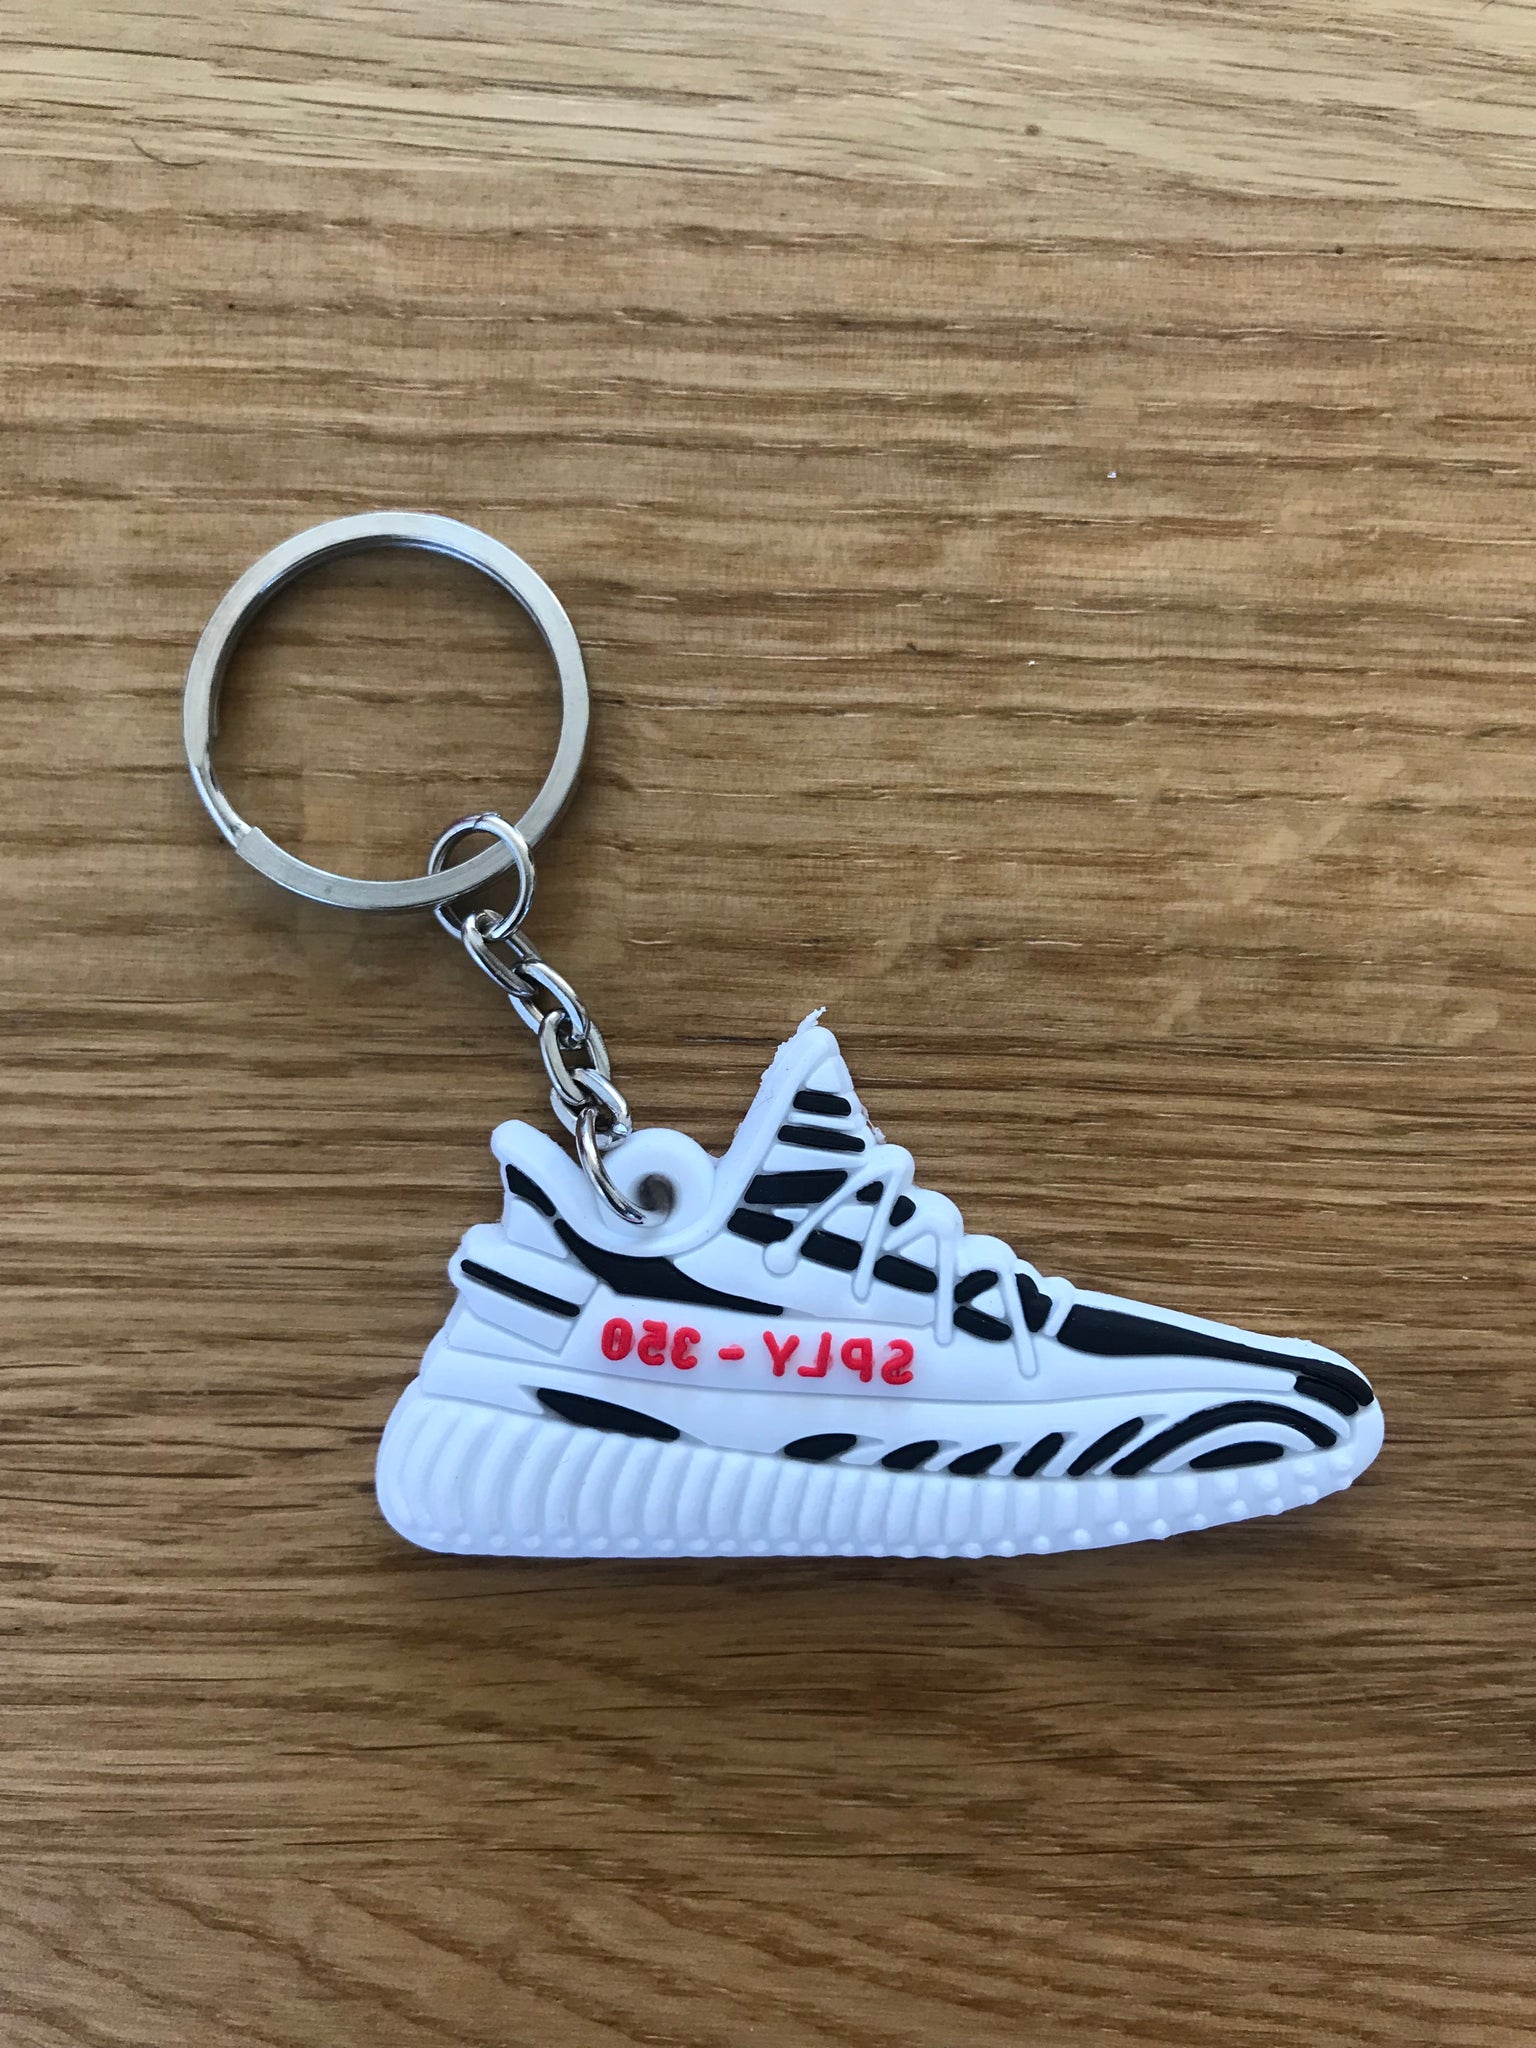 yeezy zebra keychain